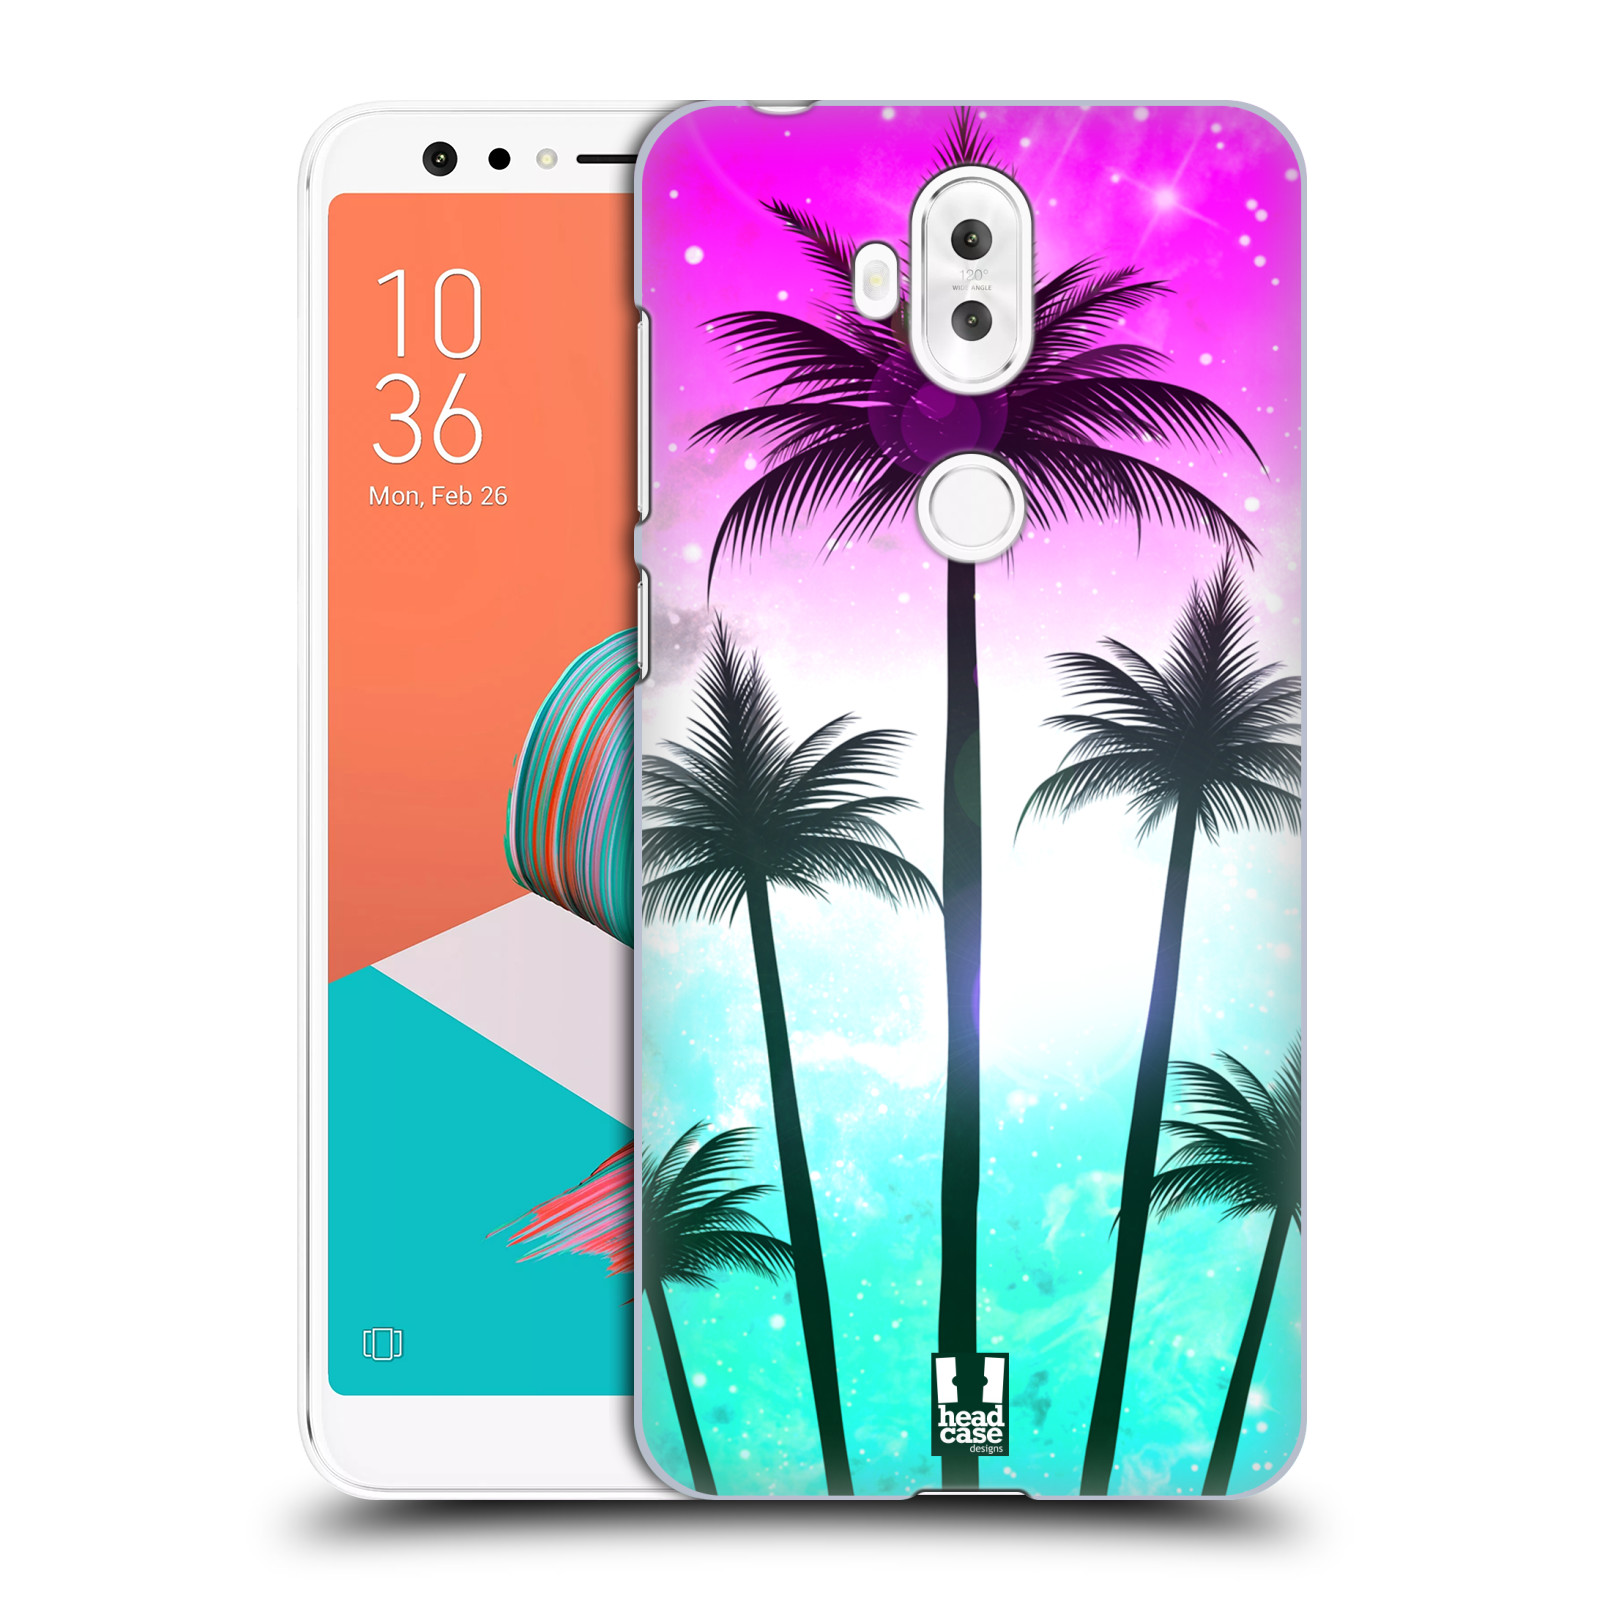 HEAD CASE plastový obal na mobil Asus Zenfone 5 LITE ZC600KL vzor Kreslený motiv silueta moře a palmy RŮŽOVÁ A TYRKYS